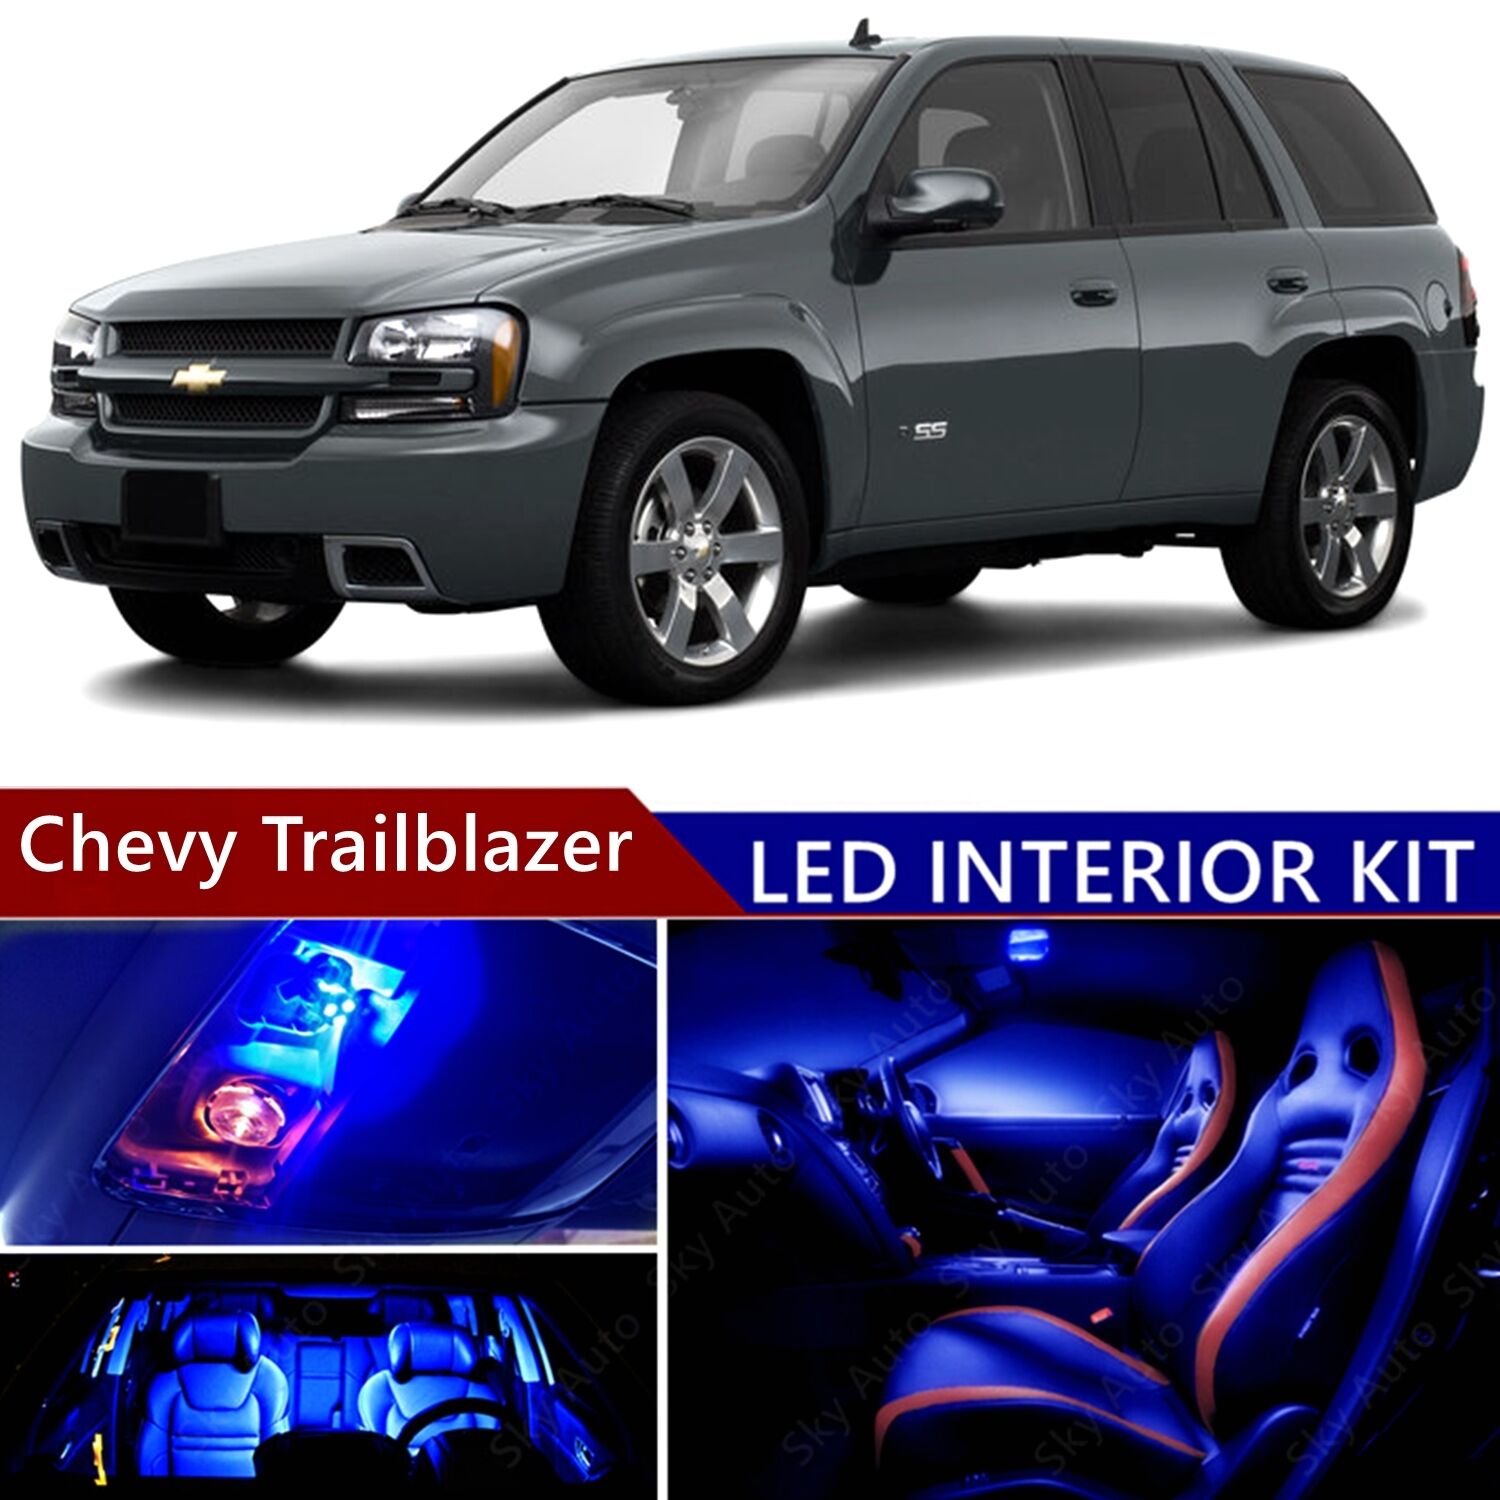 14pcs LED Blue Light Interior Package Kit for Chevy Trailblazer 2002-2009